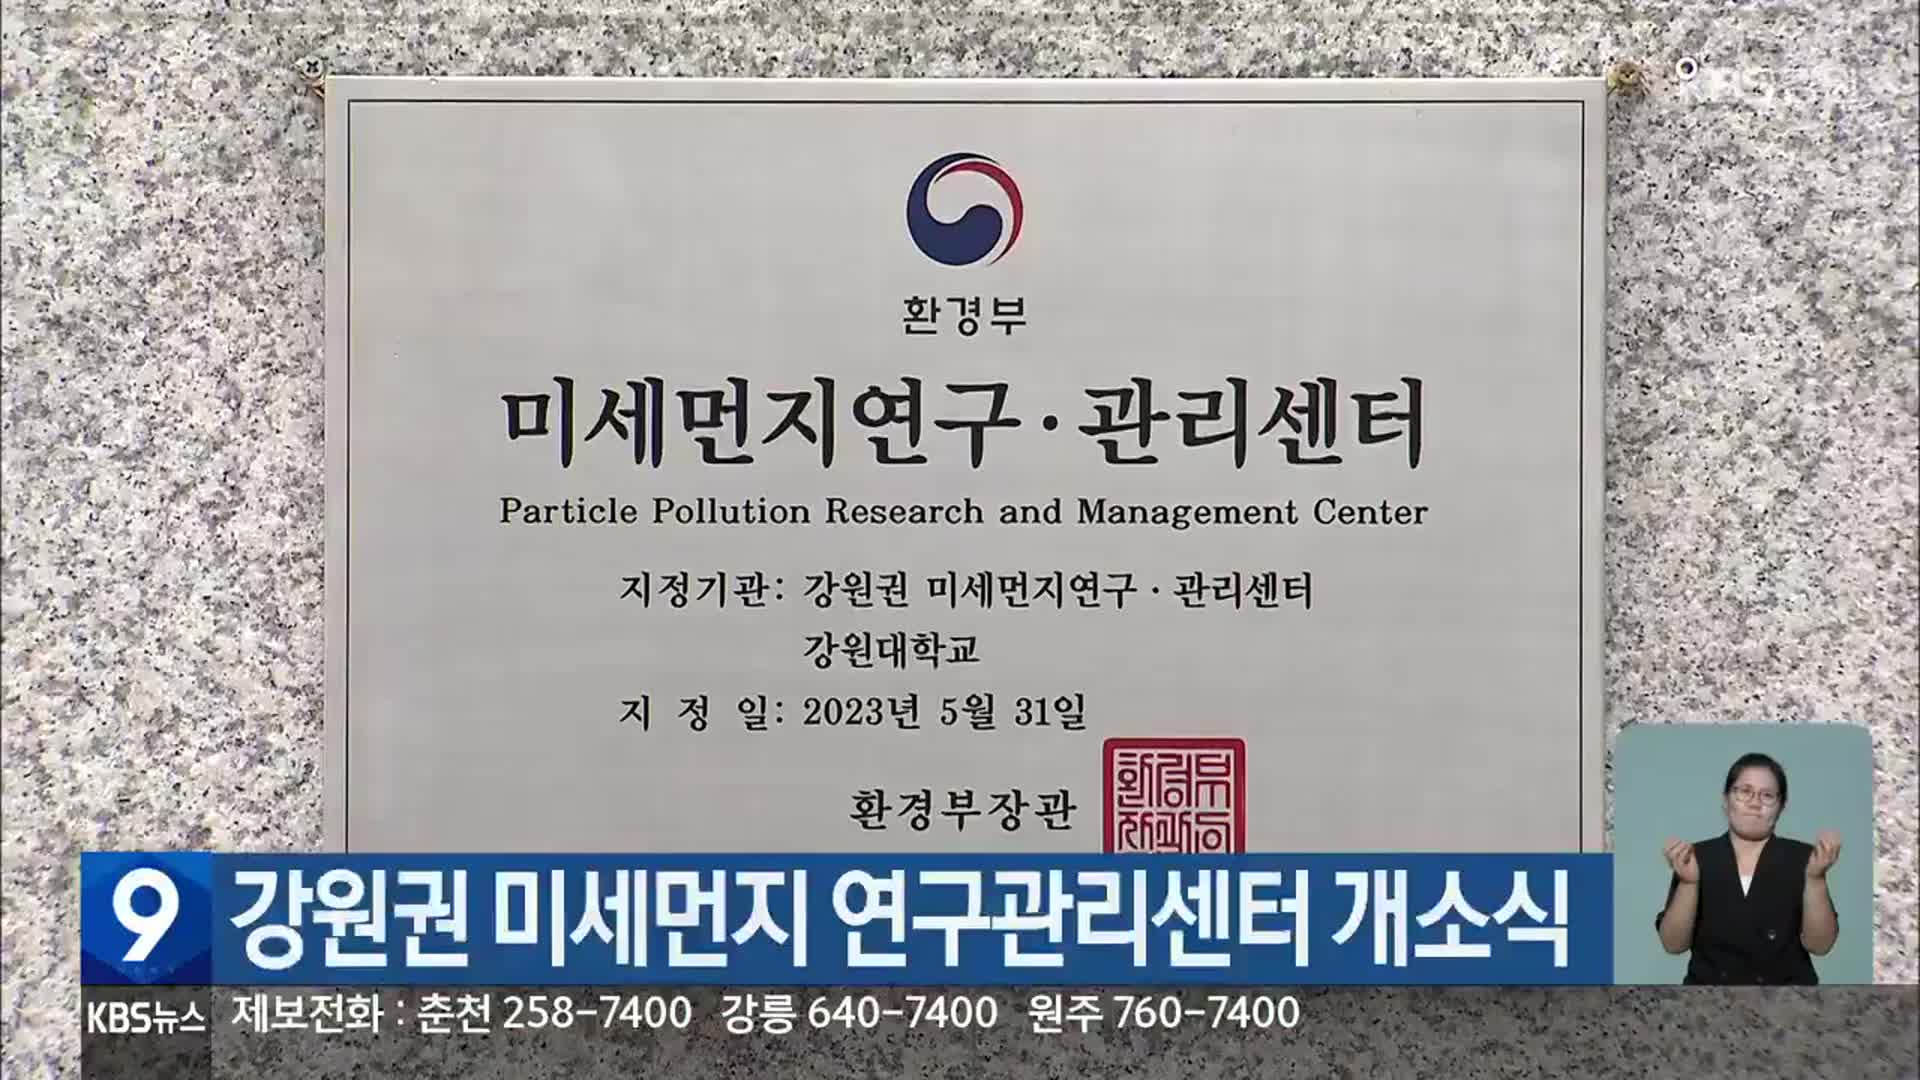 강원권 미세먼지 연구관리센터 개소식